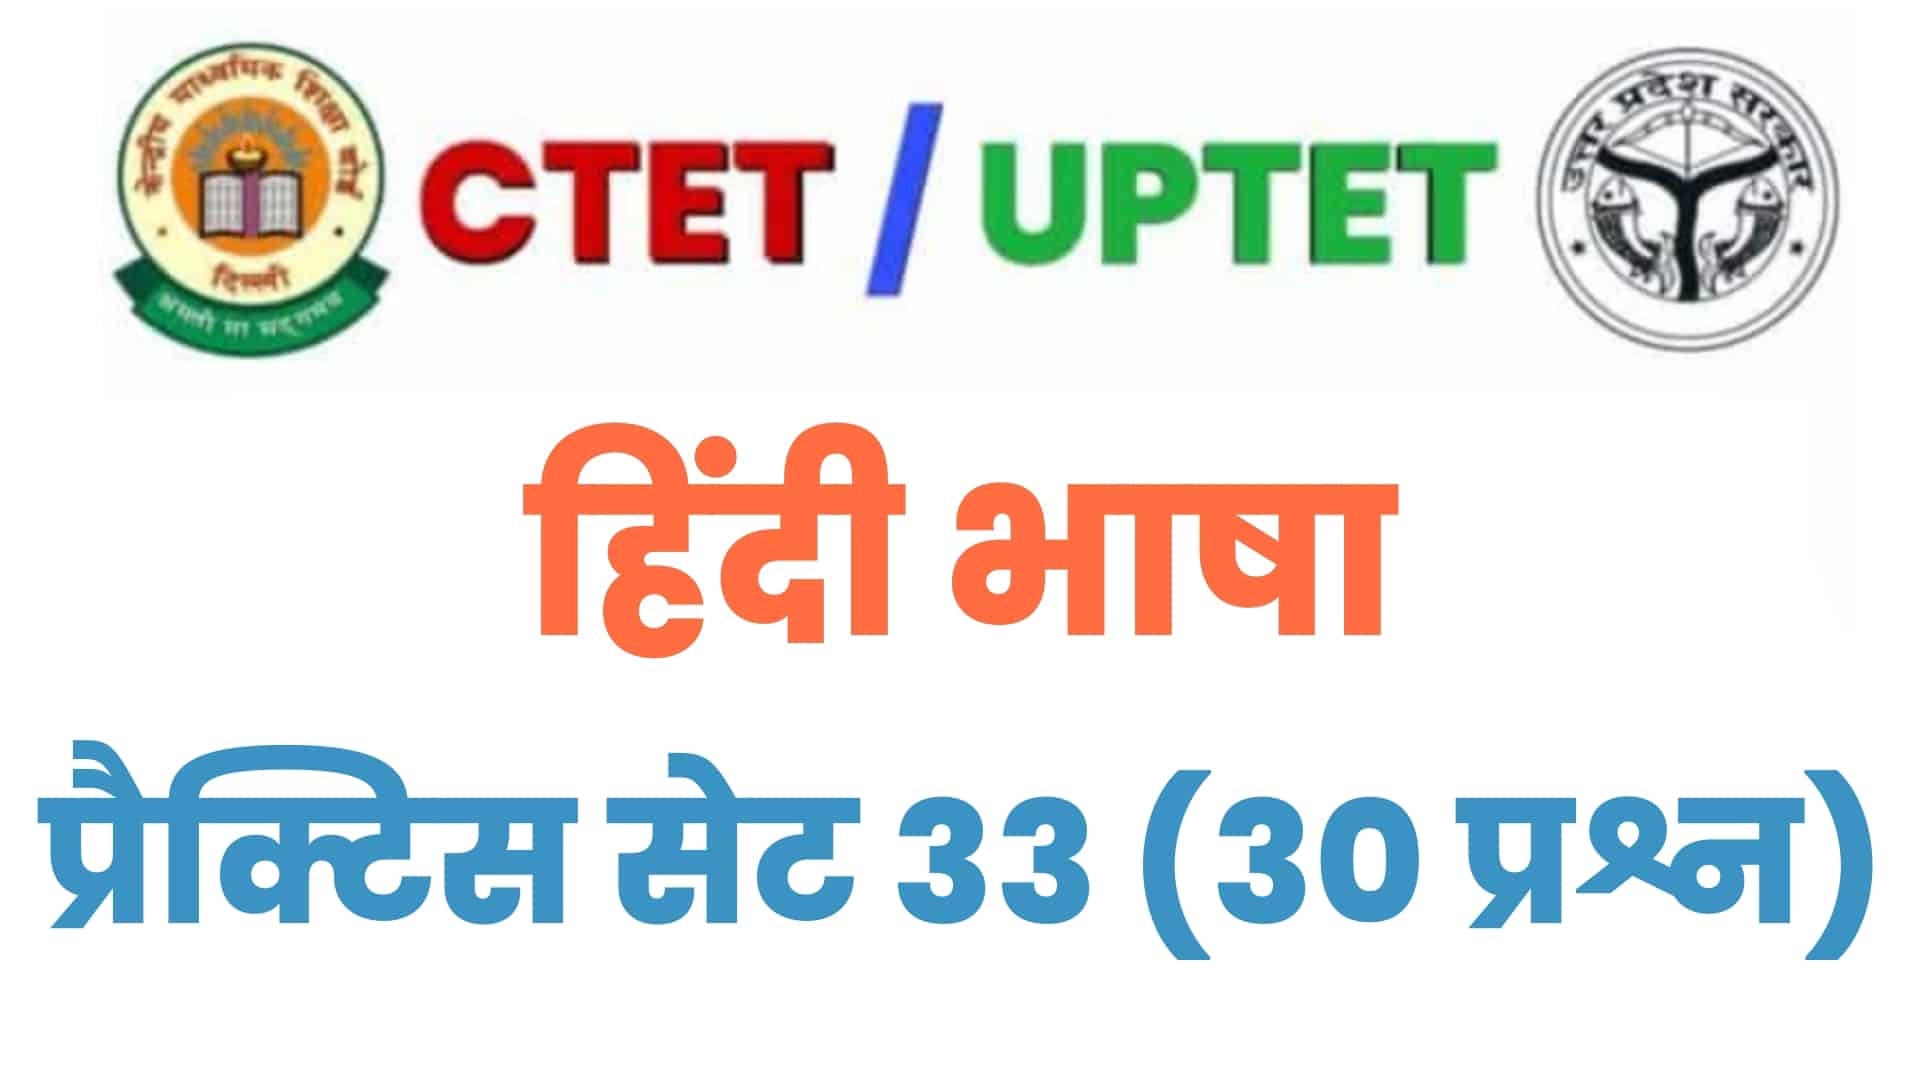 UPTET/CTET हिंदी भाषा प्रैक्टिस सेट 33 : विगत वर्षों के इन 30 महत्वपूर्ण प्रश्नों पर डालें एक नज़र